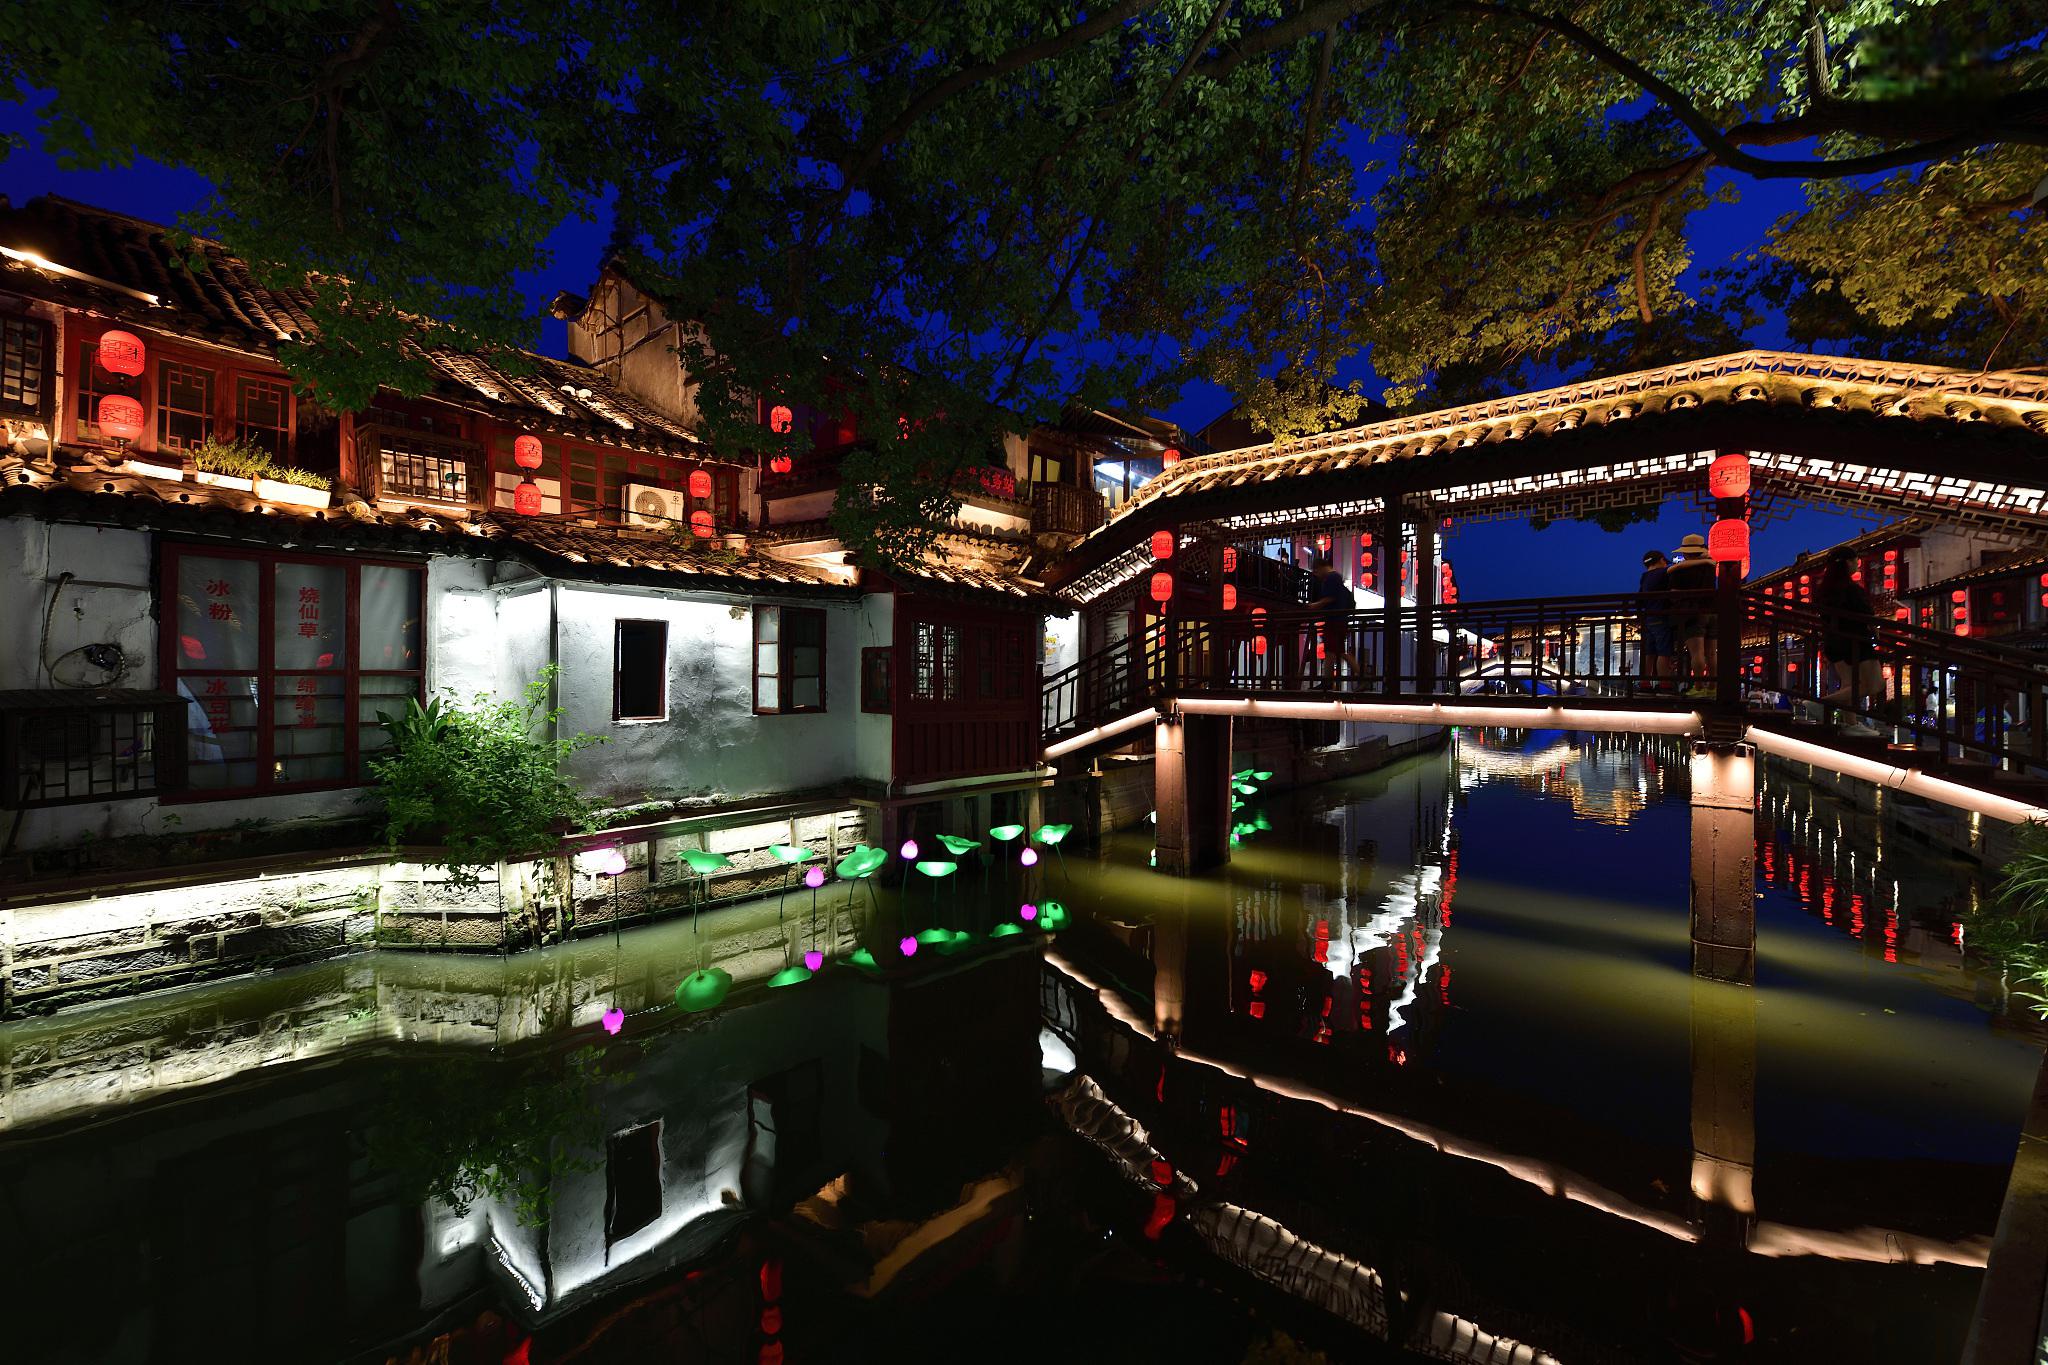 周至水街:历史文化与自然美景的交相辉映 位于陕西省西安市的周至水街